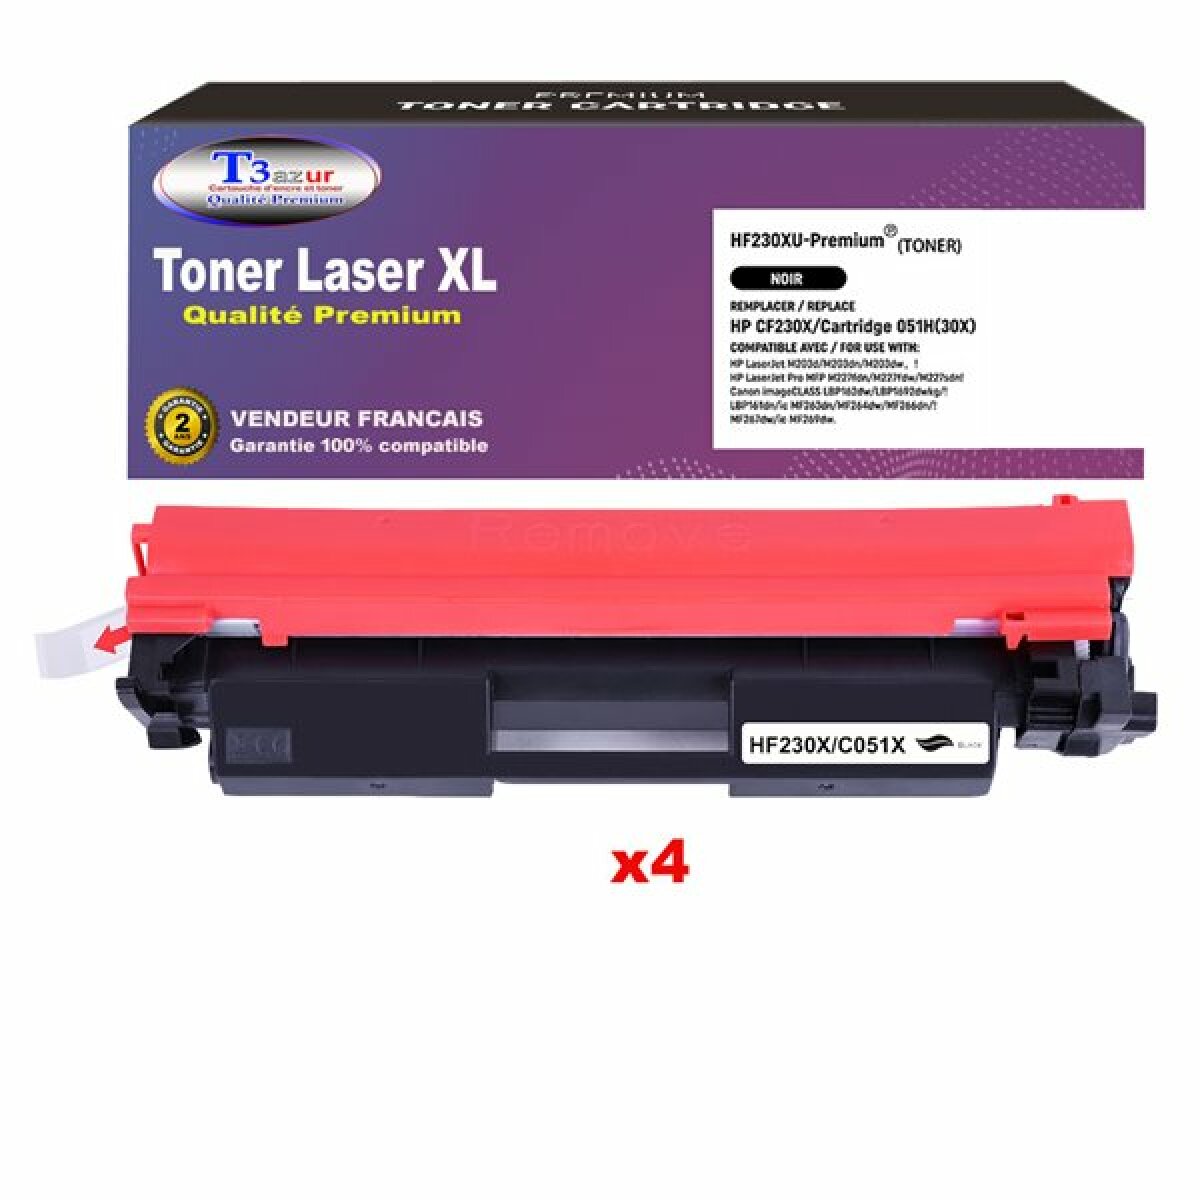 T3Azur T3AZUR  - Lot de 4 Toners Laser compatibles avec HP LaserJet Pro MFP M227, M227fdn, M227fdw, M227sdn  remplace CF230X (30X) Noir